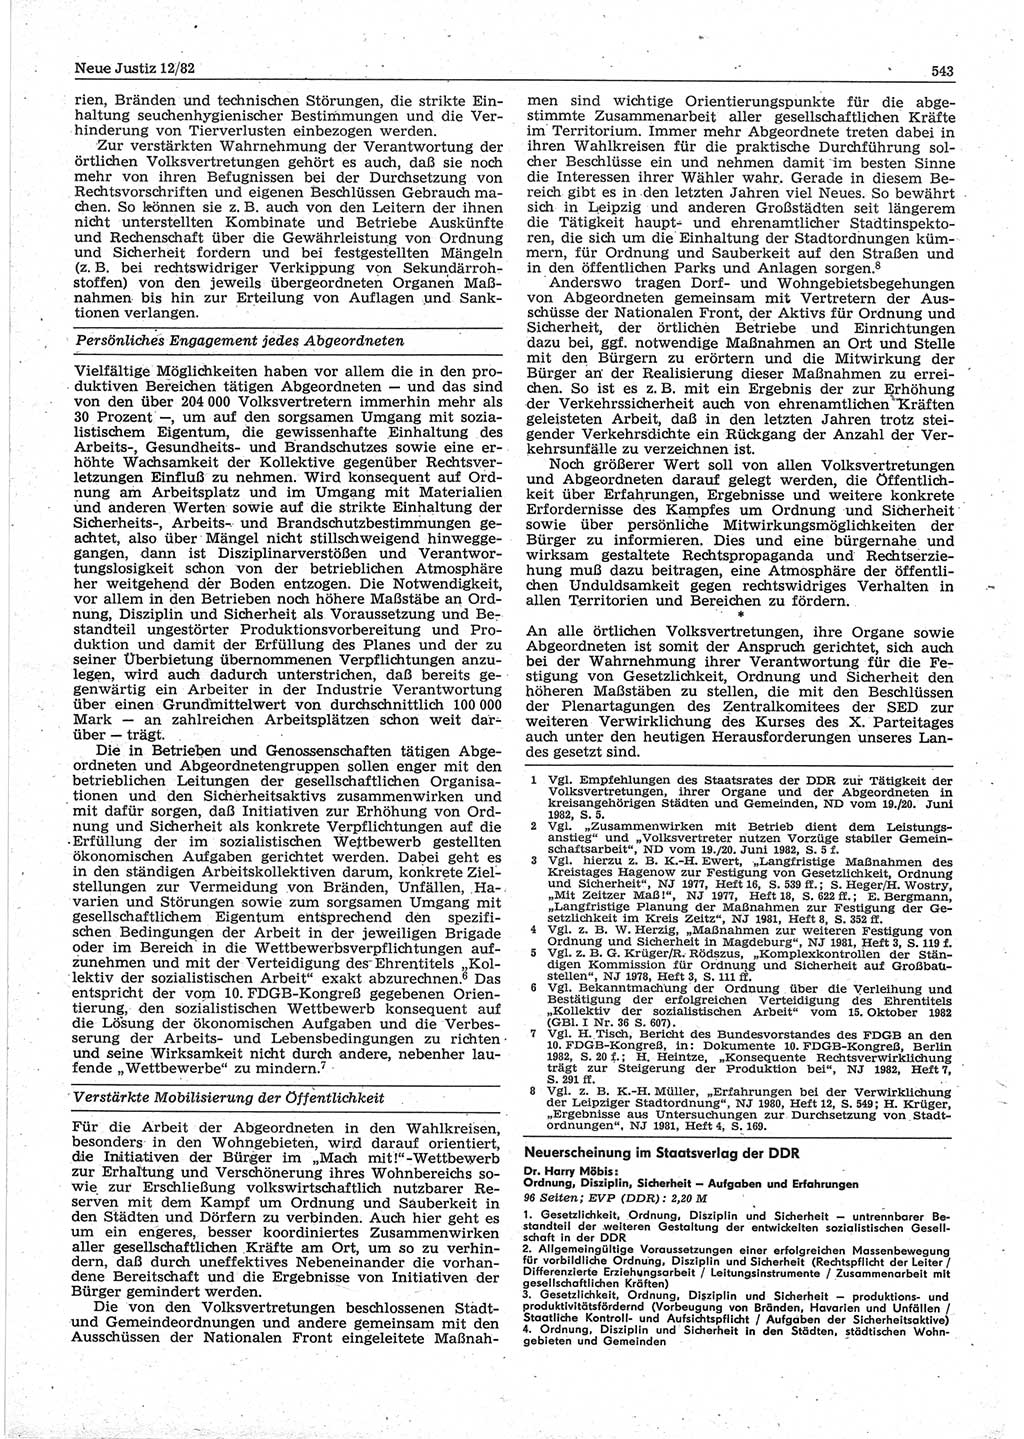 Neue Justiz (NJ), Zeitschrift für sozialistisches Recht und Gesetzlichkeit [Deutsche Demokratische Republik (DDR)], 36. Jahrgang 1982, Seite 543 (NJ DDR 1982, S. 543)